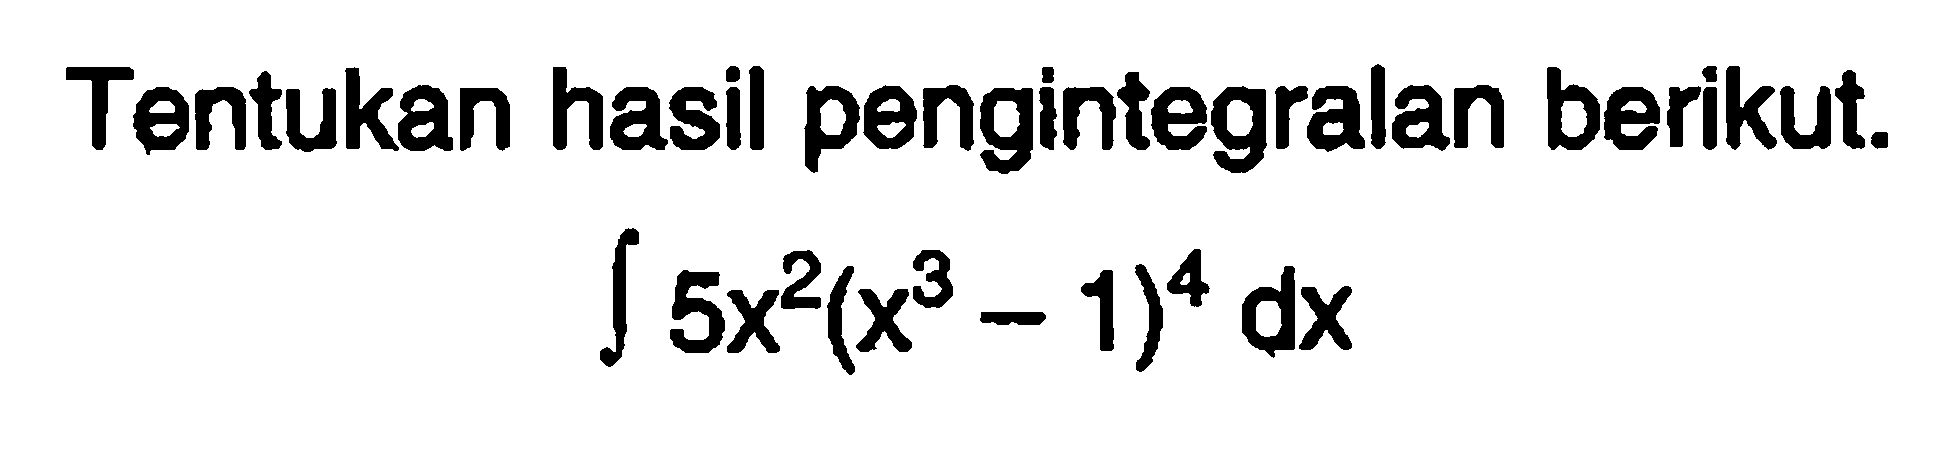 Tentukan hasil pengintegralan berikut.
integral 5x^2(x^3-1)^4 dx